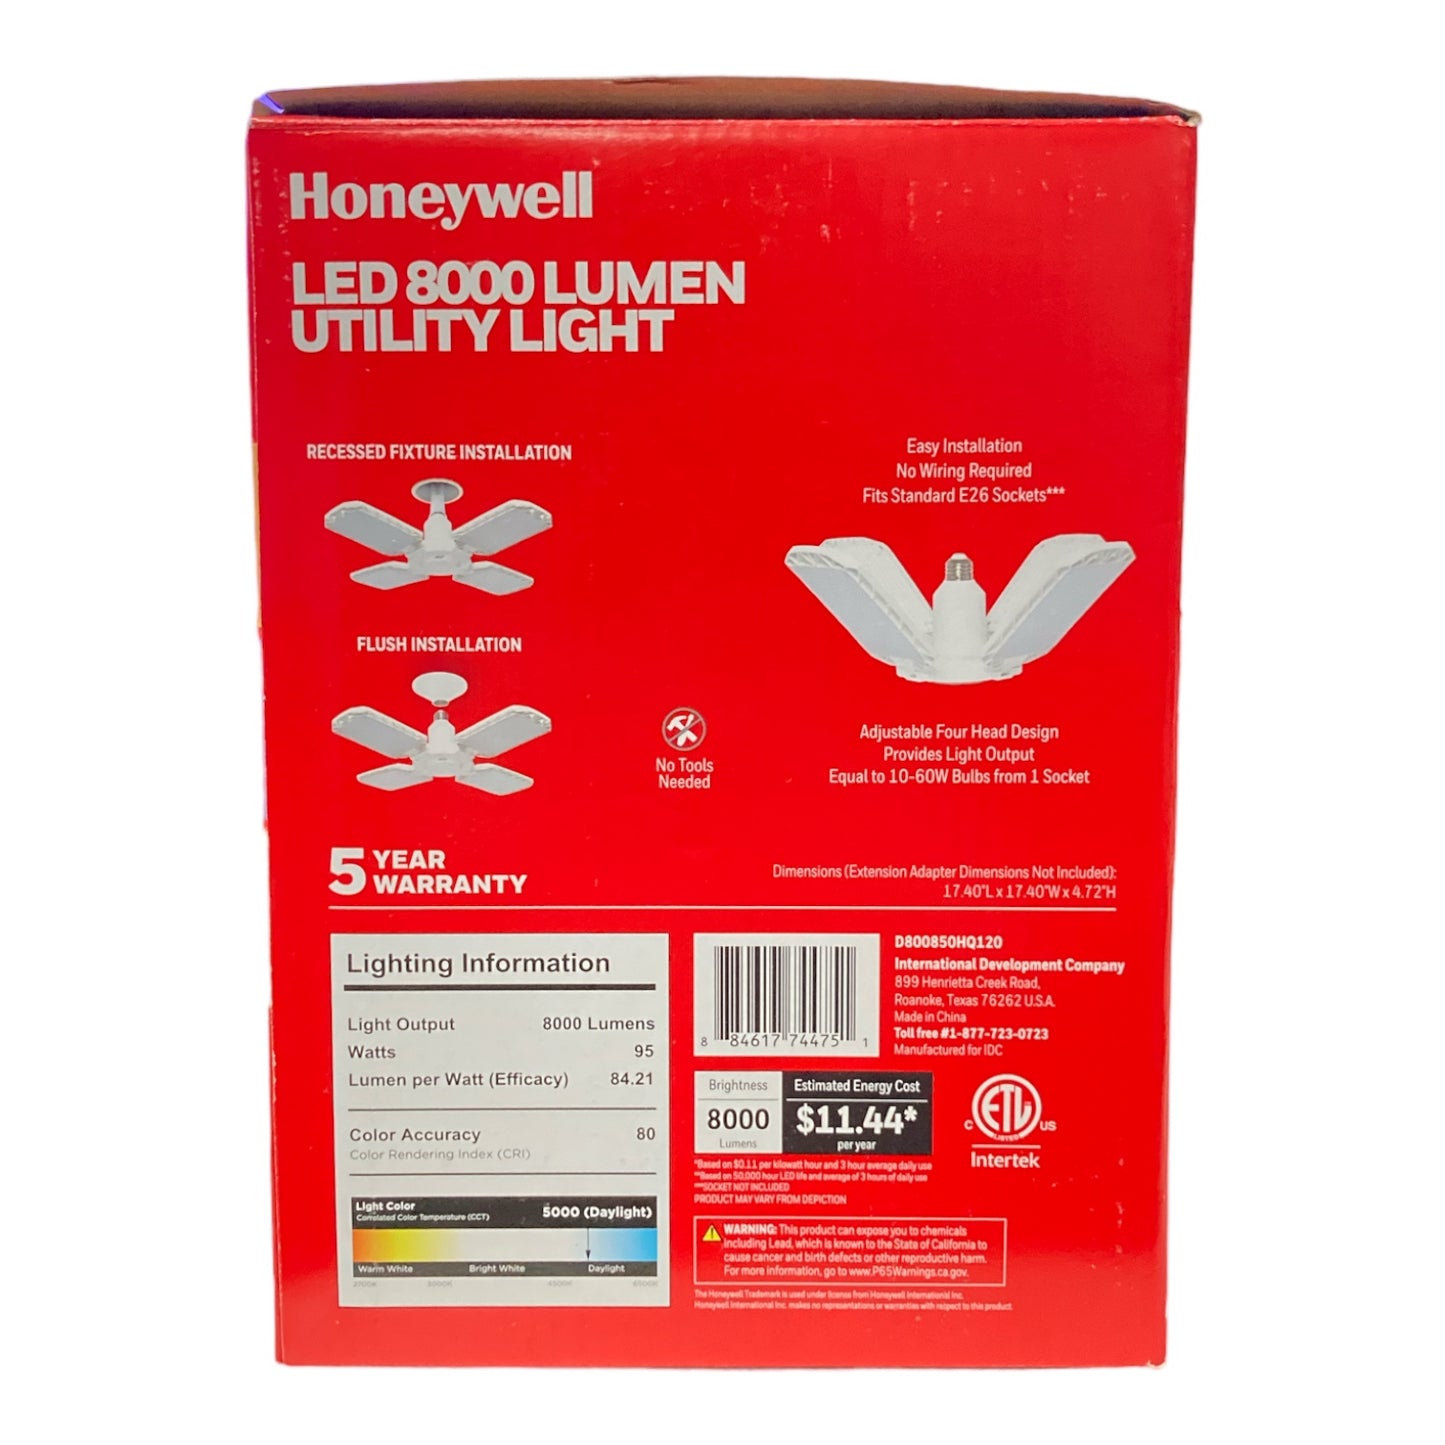 Honeywell LED 8000 Lumen Utility Light